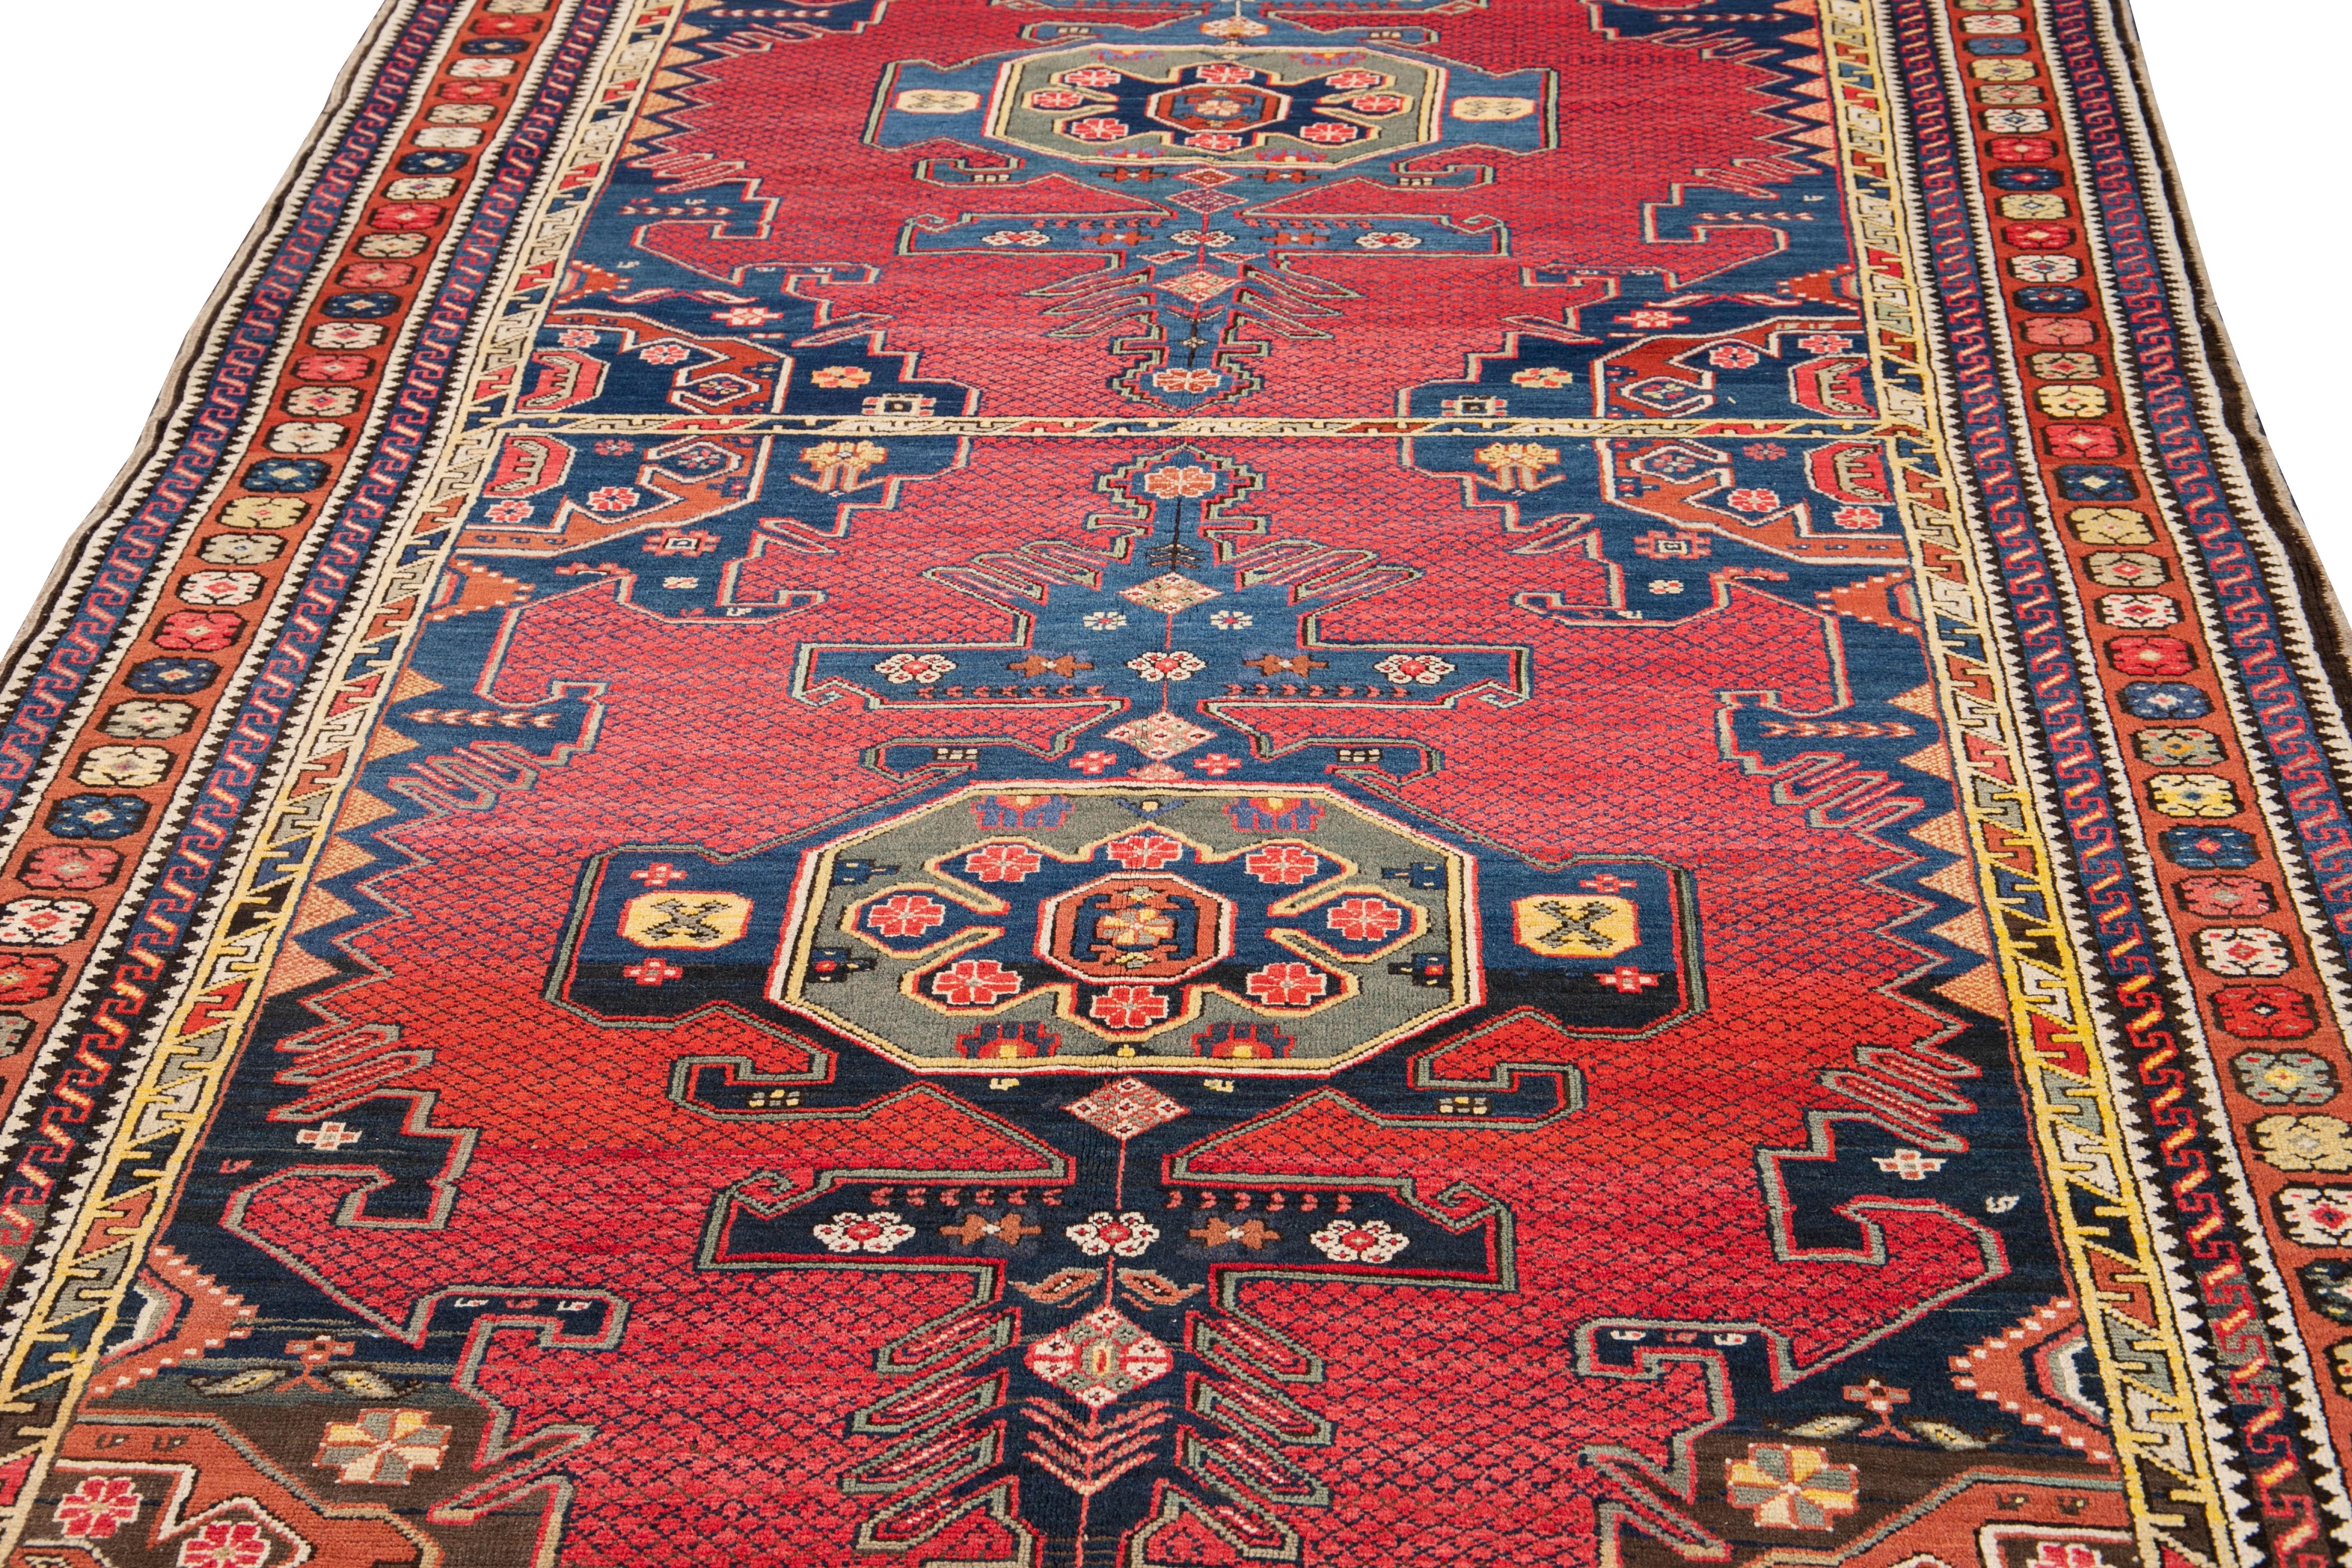 Schöner antiker, handgeknüpfter kasachischer Wollteppich mit einem roten Feld. Dieser Teppich hat einen rostfarbenen Rahmen und gelbe, blaue und graue Akzente mit einem geometrischen Tribal-Muster, das über den ganzen Teppich verteilt ist.

Dieser